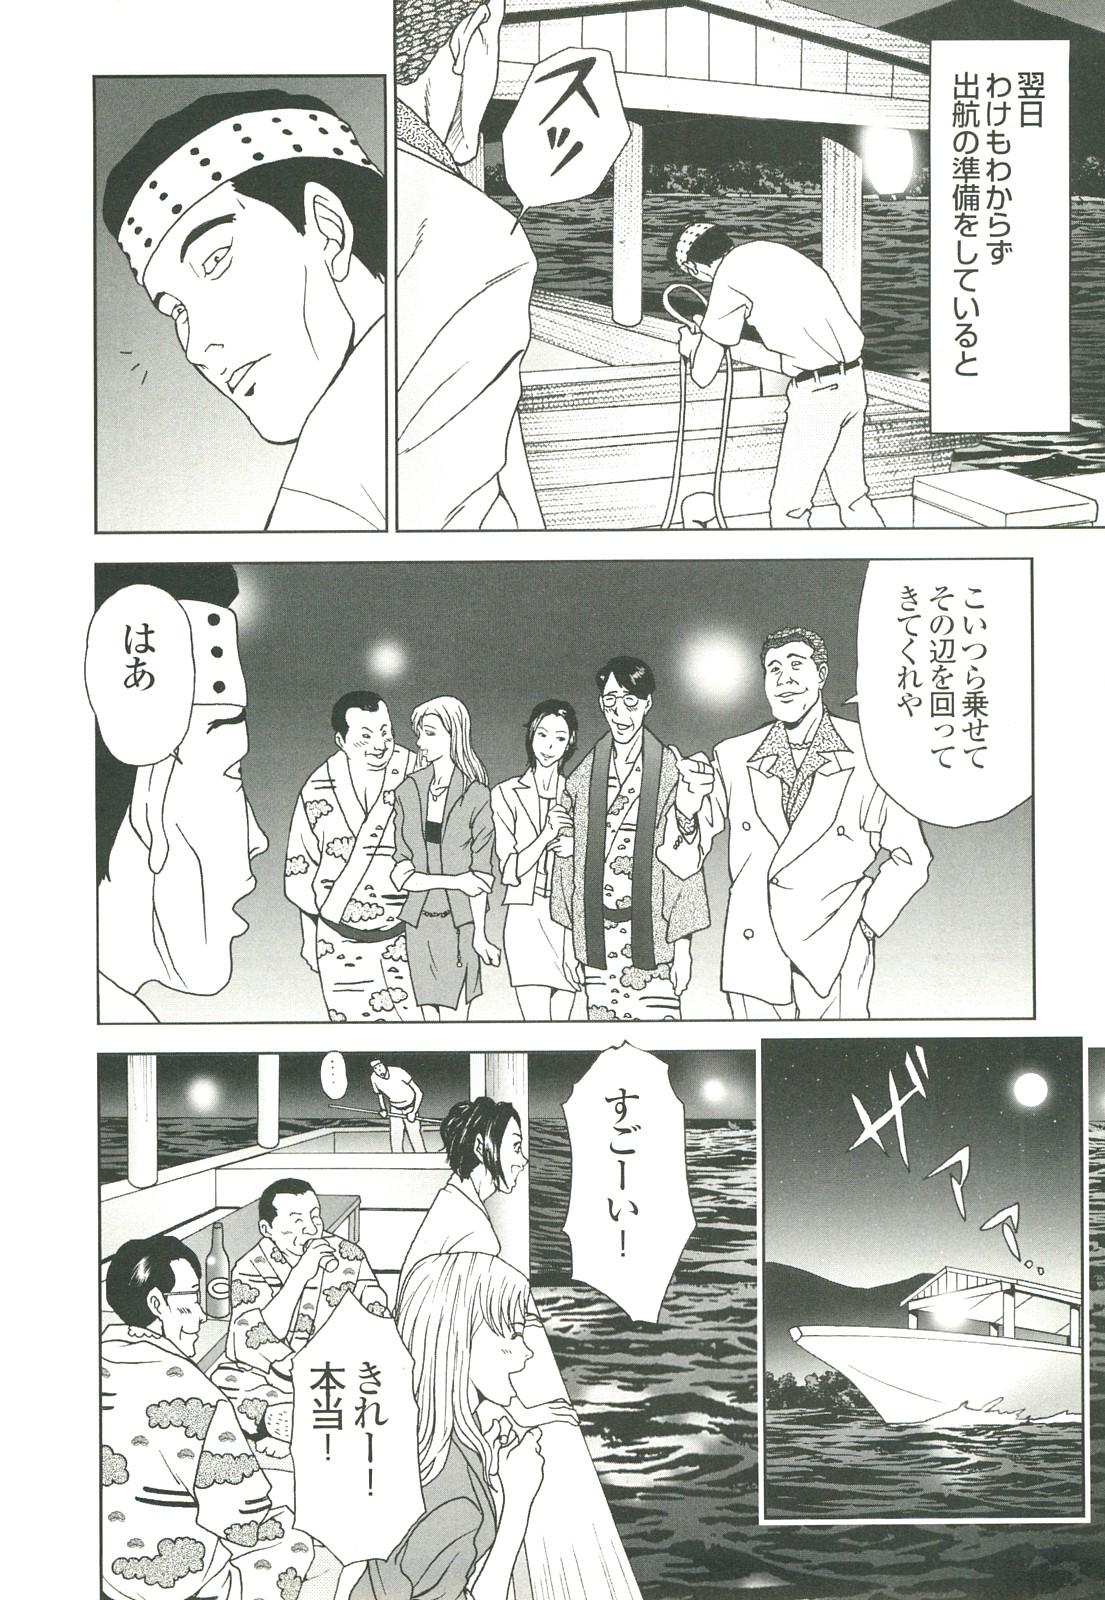 コミック裏モノJAPAN Vol.18 今井のりたつスペシャル号 279